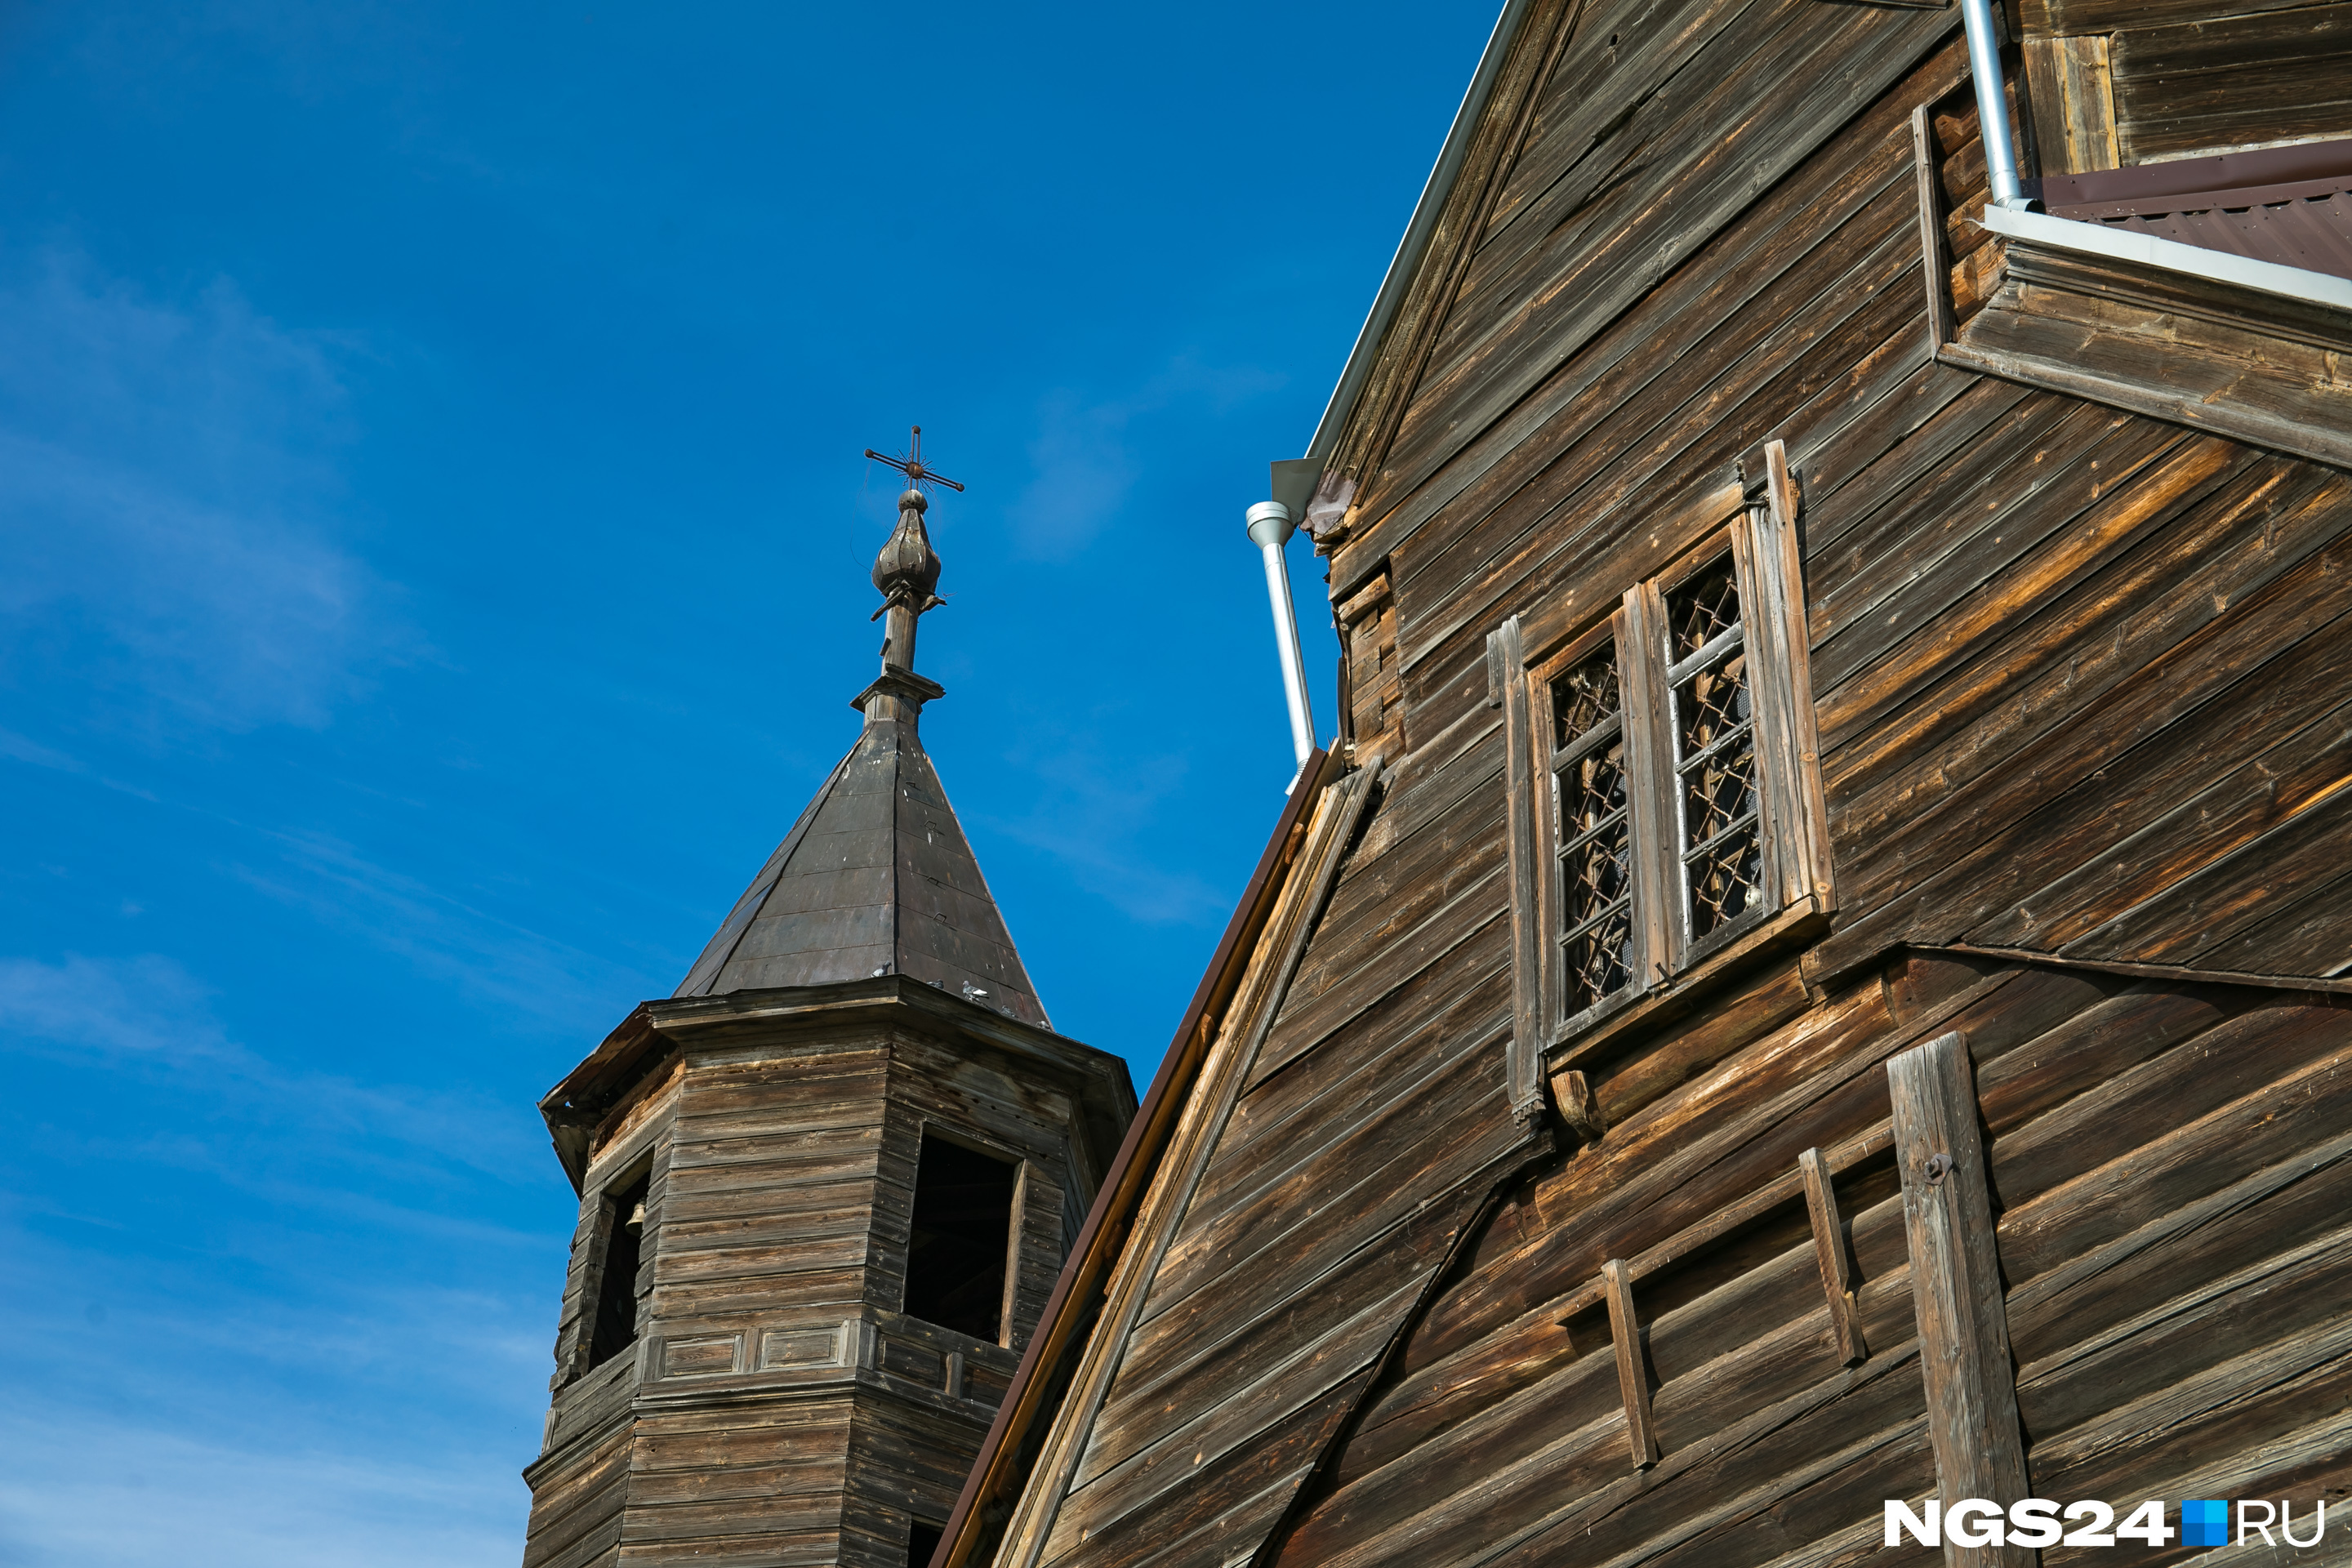 Деревянные церкви — характерная особенность сибирского зодчества